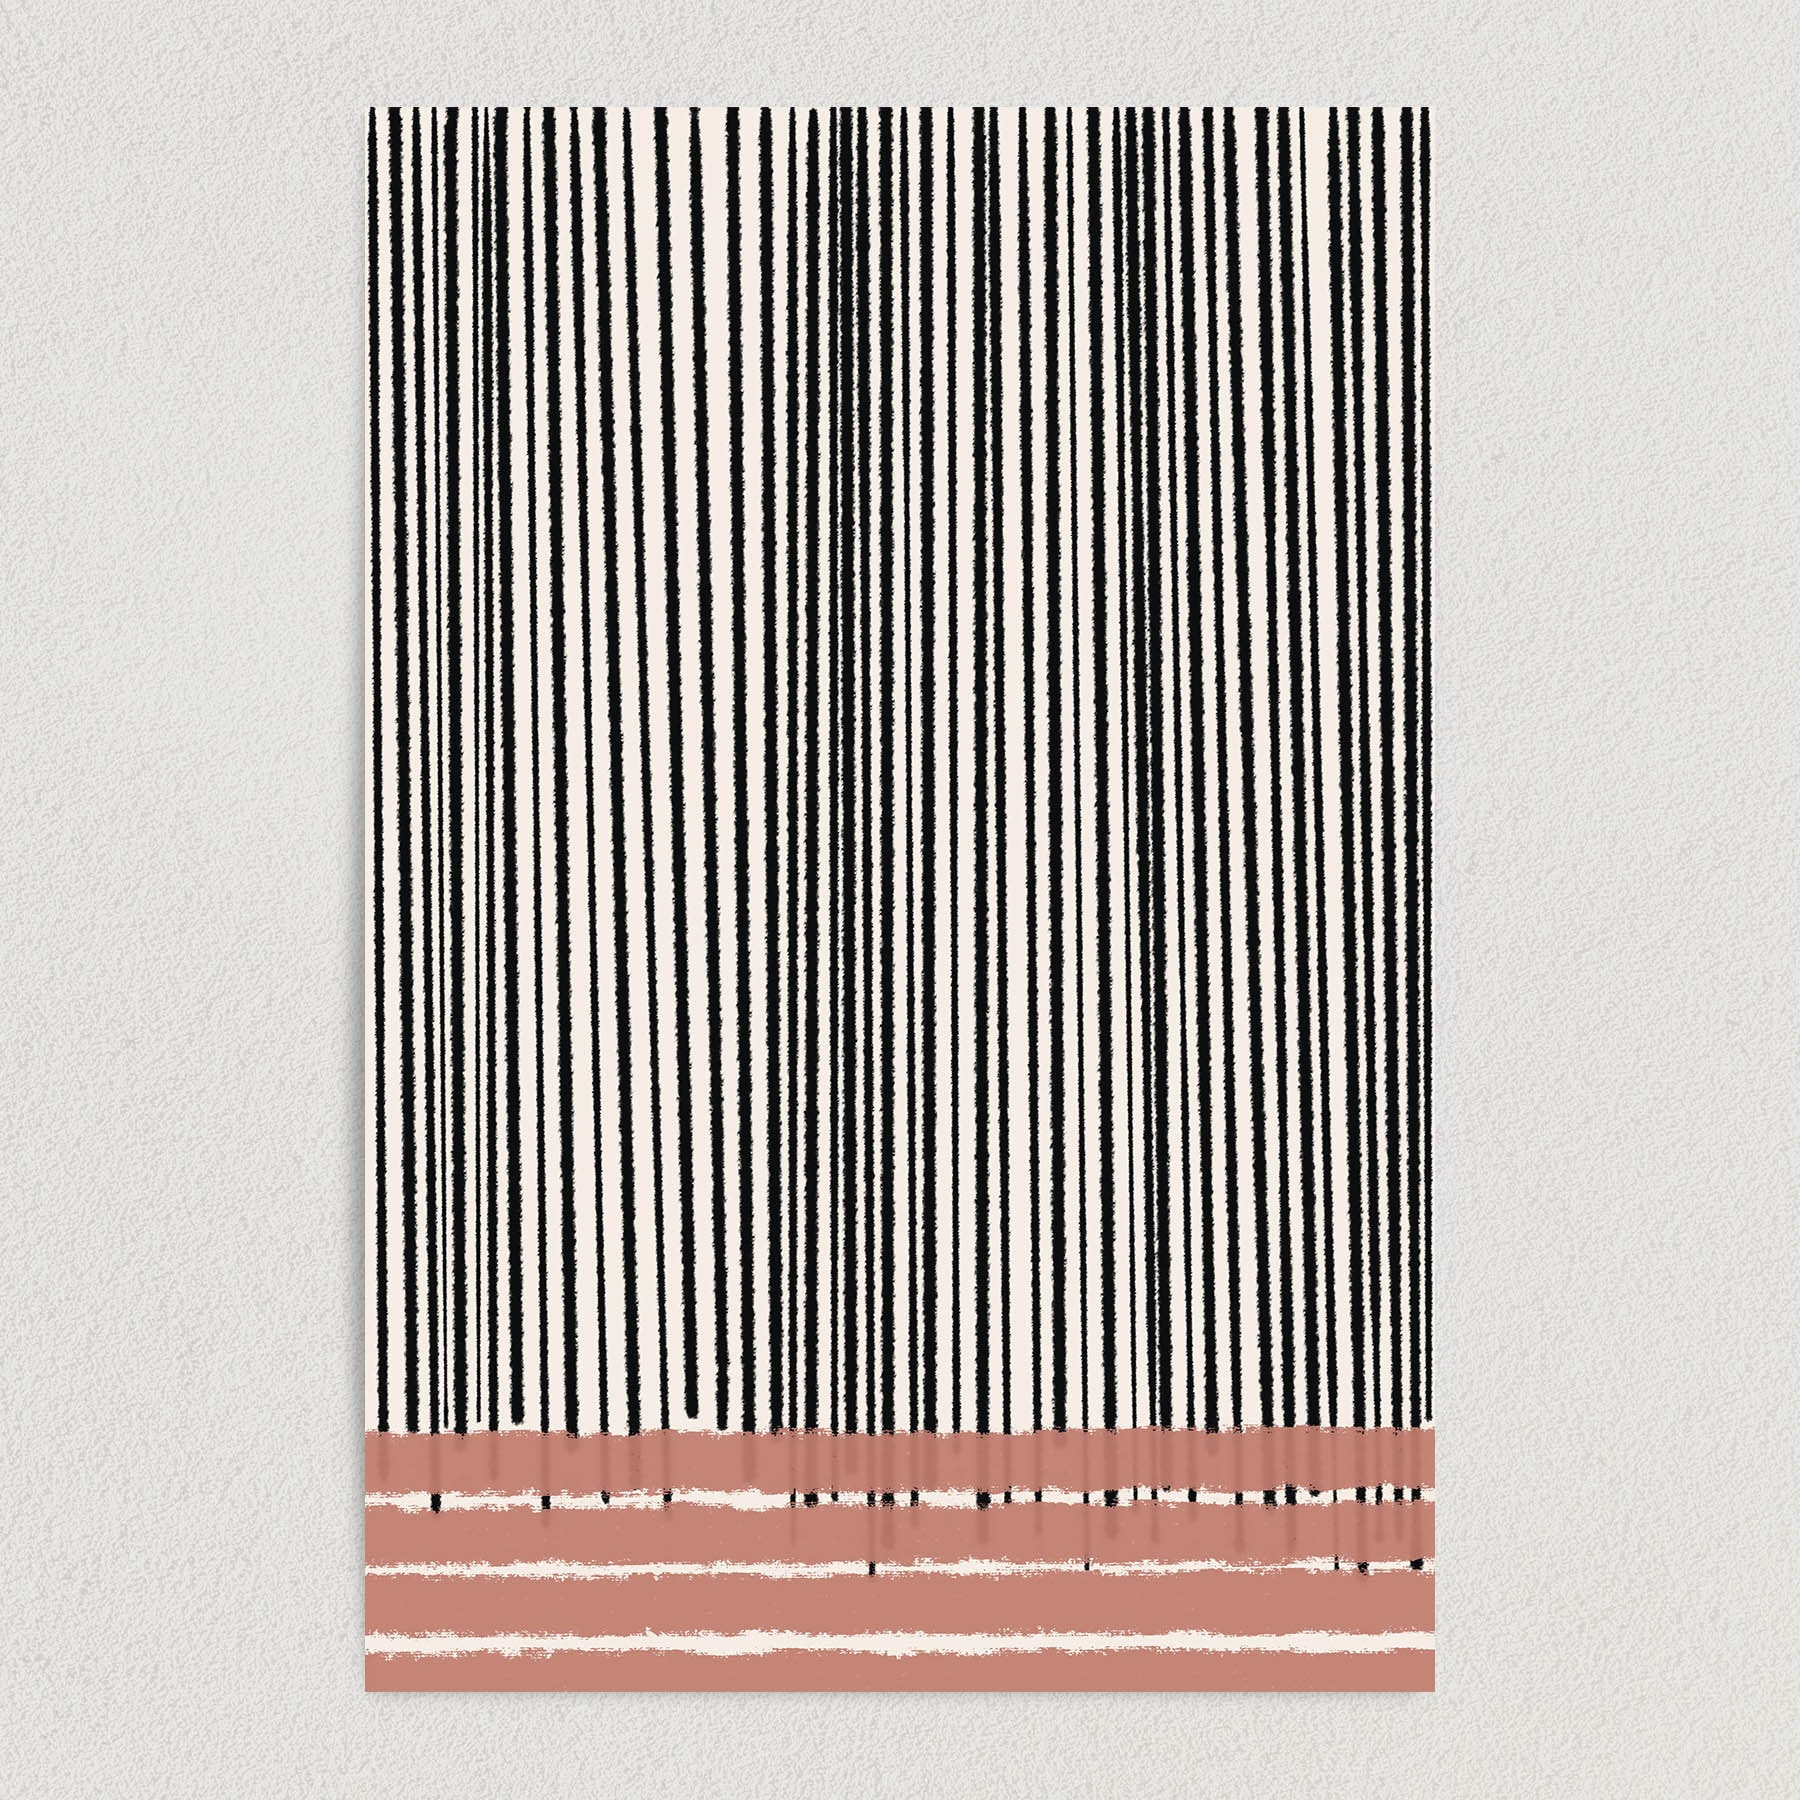 Minimalist Abstract Lines Art Print Poster 12″ x 18″ Wall Art AL1111